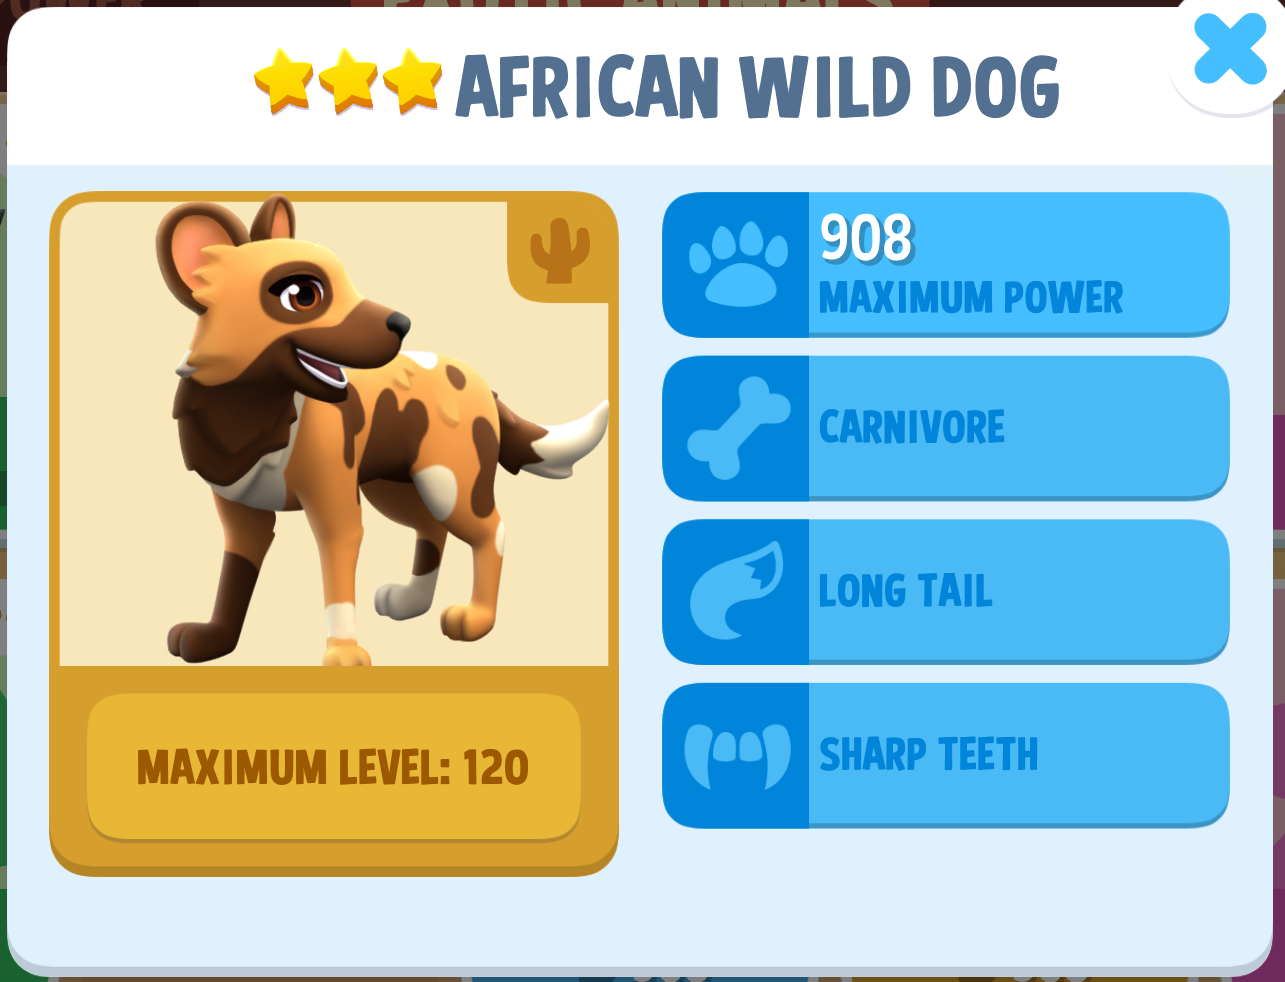 African Wild Dog Info